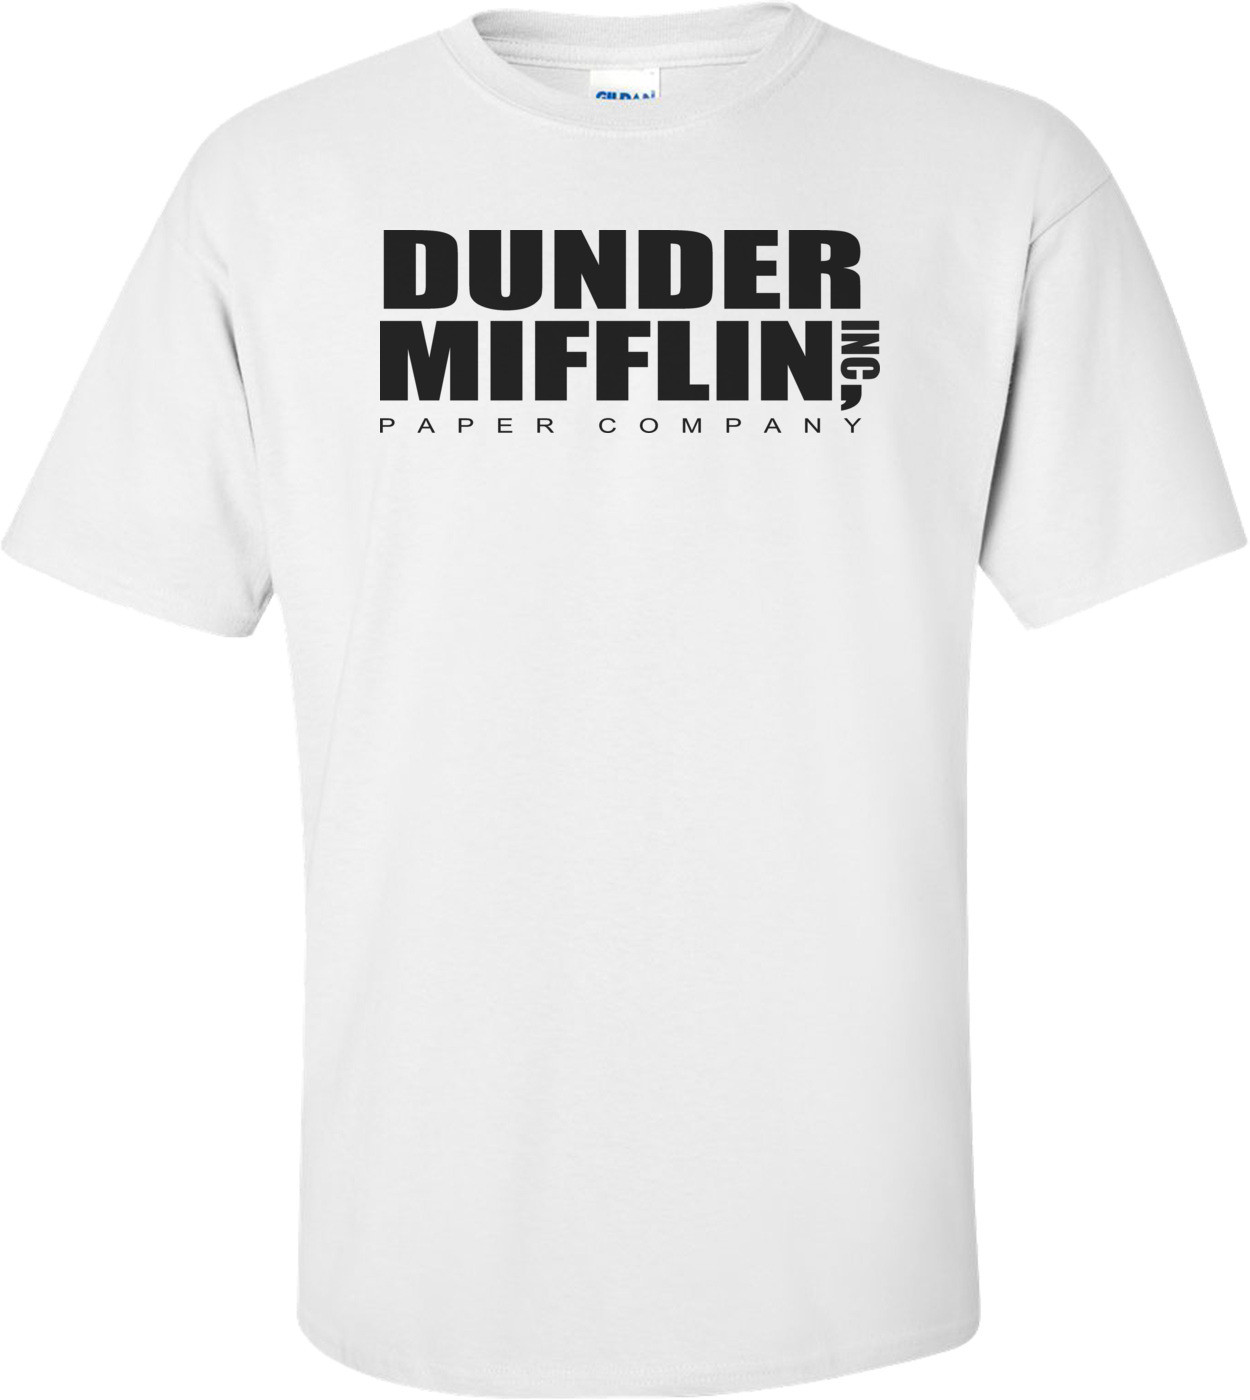 Dunder Miflin Paper Company